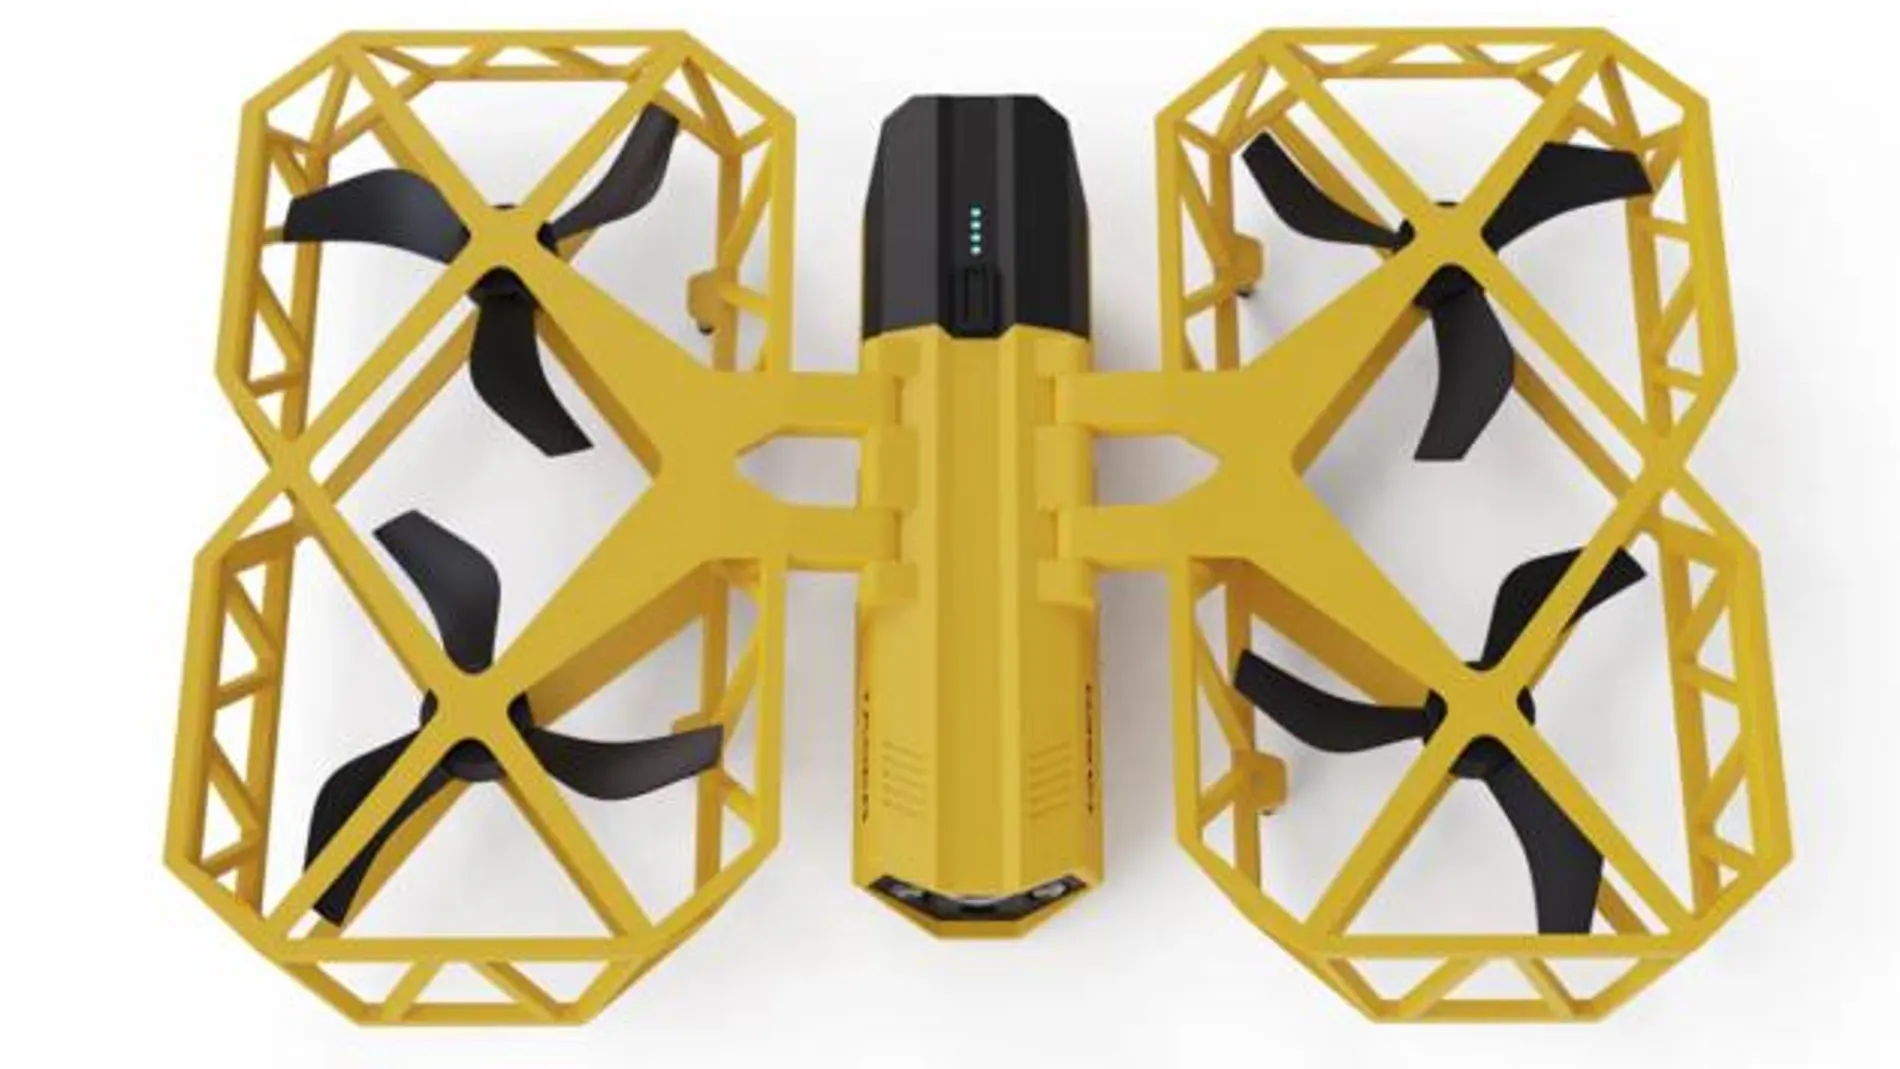 Diseño del dron con taser de Axon International